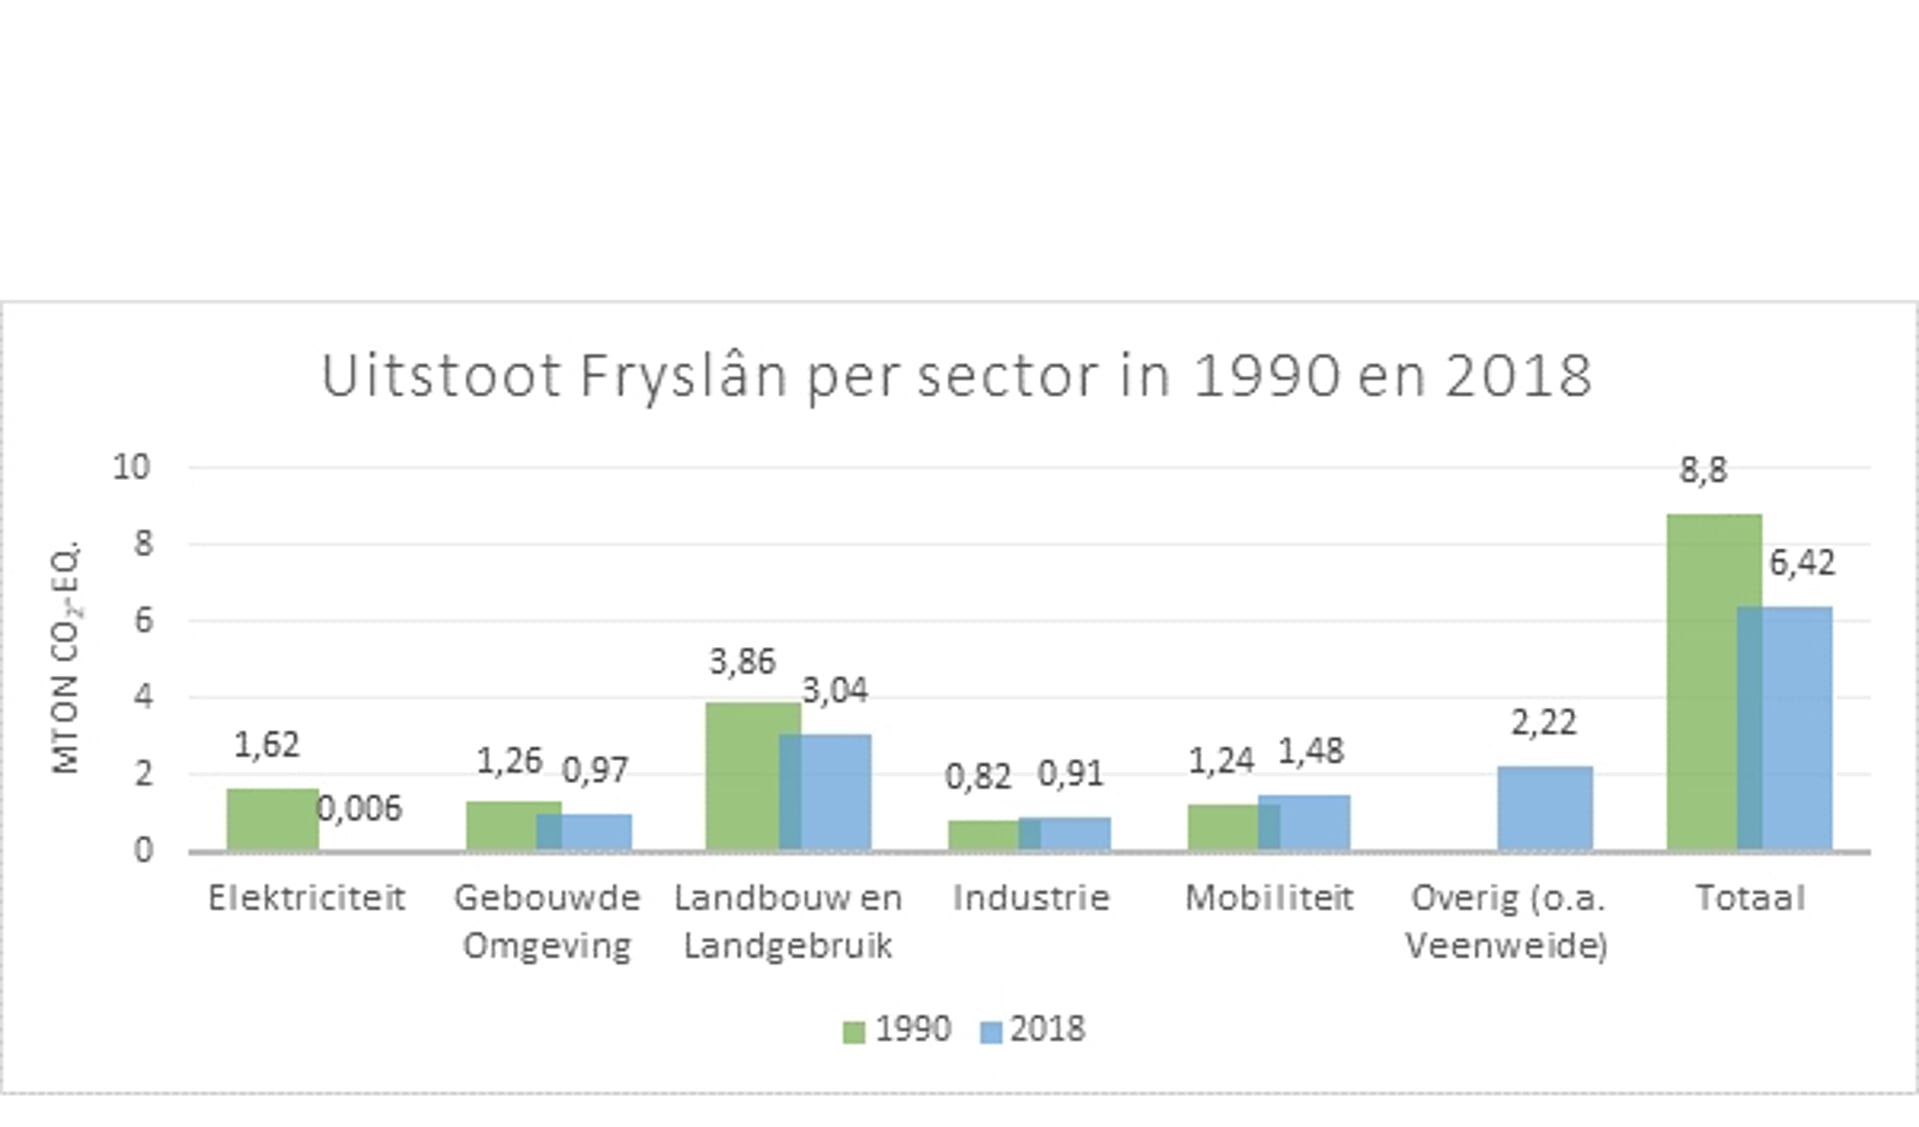 De uitstoot van broeikasgassen in Fryslân per sector in 1990 en 2018.